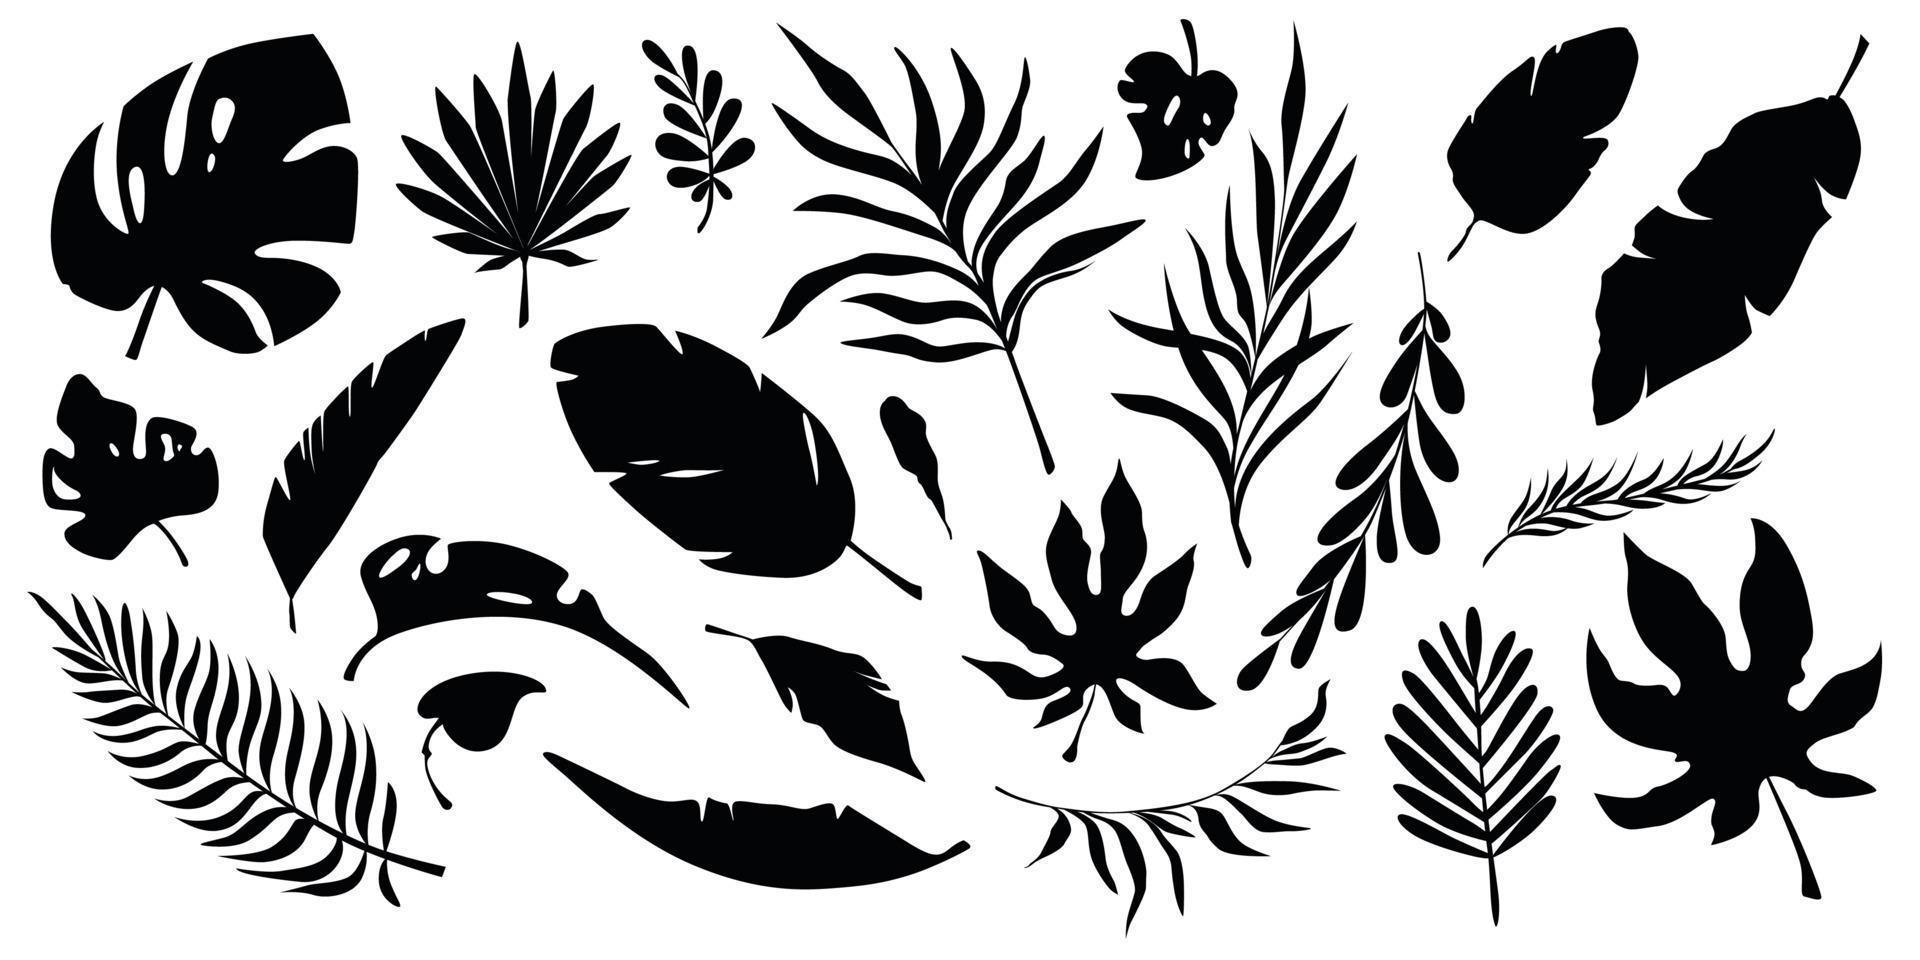 Satz schwarze Silhouetten tropischer Blätter. Blätter von Bananenbaum, Palme, Monstera und Sträuchern. vektor